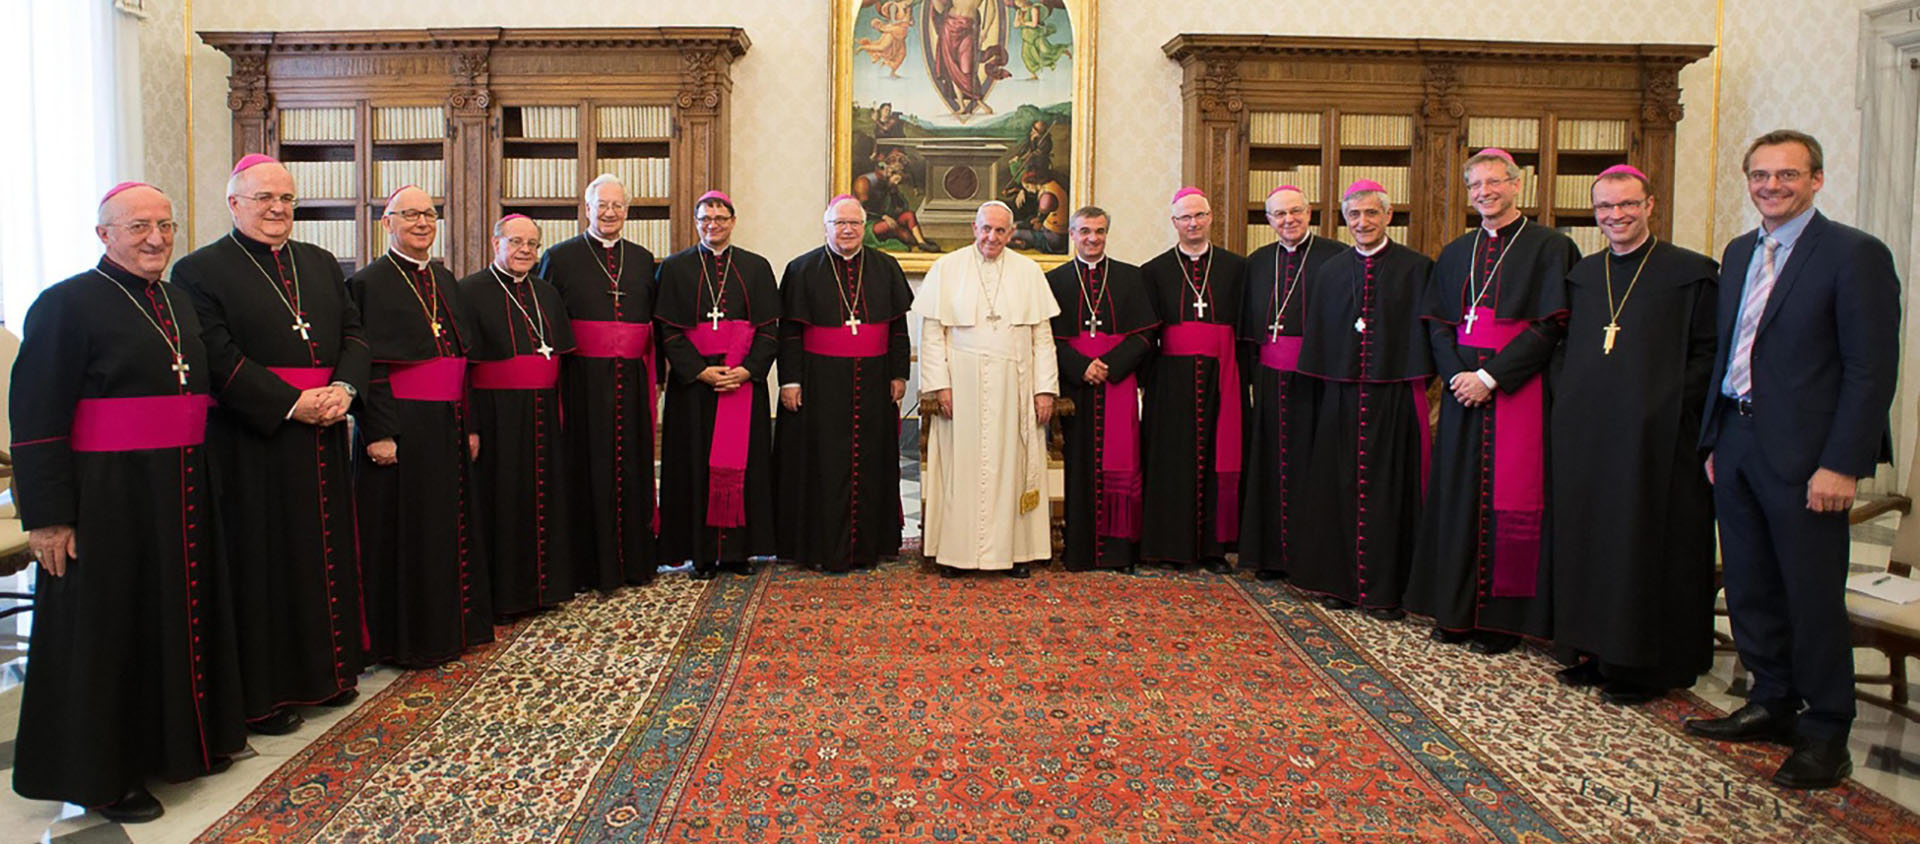 Lors de la visite "ad limina" de 2014, les évêques suisses prennent la pause avec le pape François après deux heures d'entretien  | © Keystone/EPA/Osservatore Romano